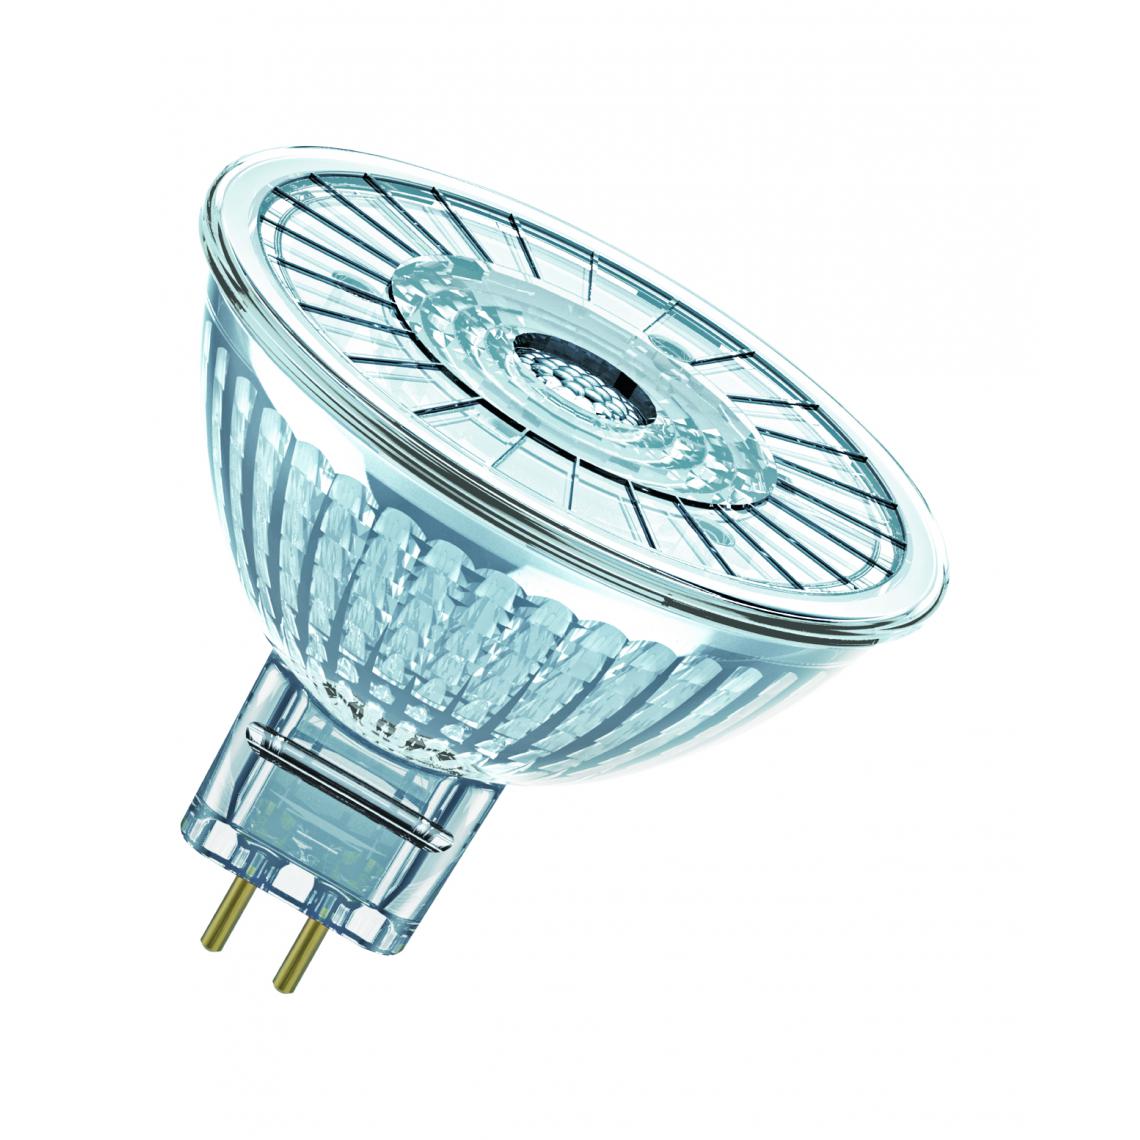 Osram - ampoule à led - osram parathom - gu5.3 - 3.4w - 3000k - 230 lm - mr16 - dimmable - osram 431553 - Ampoules LED